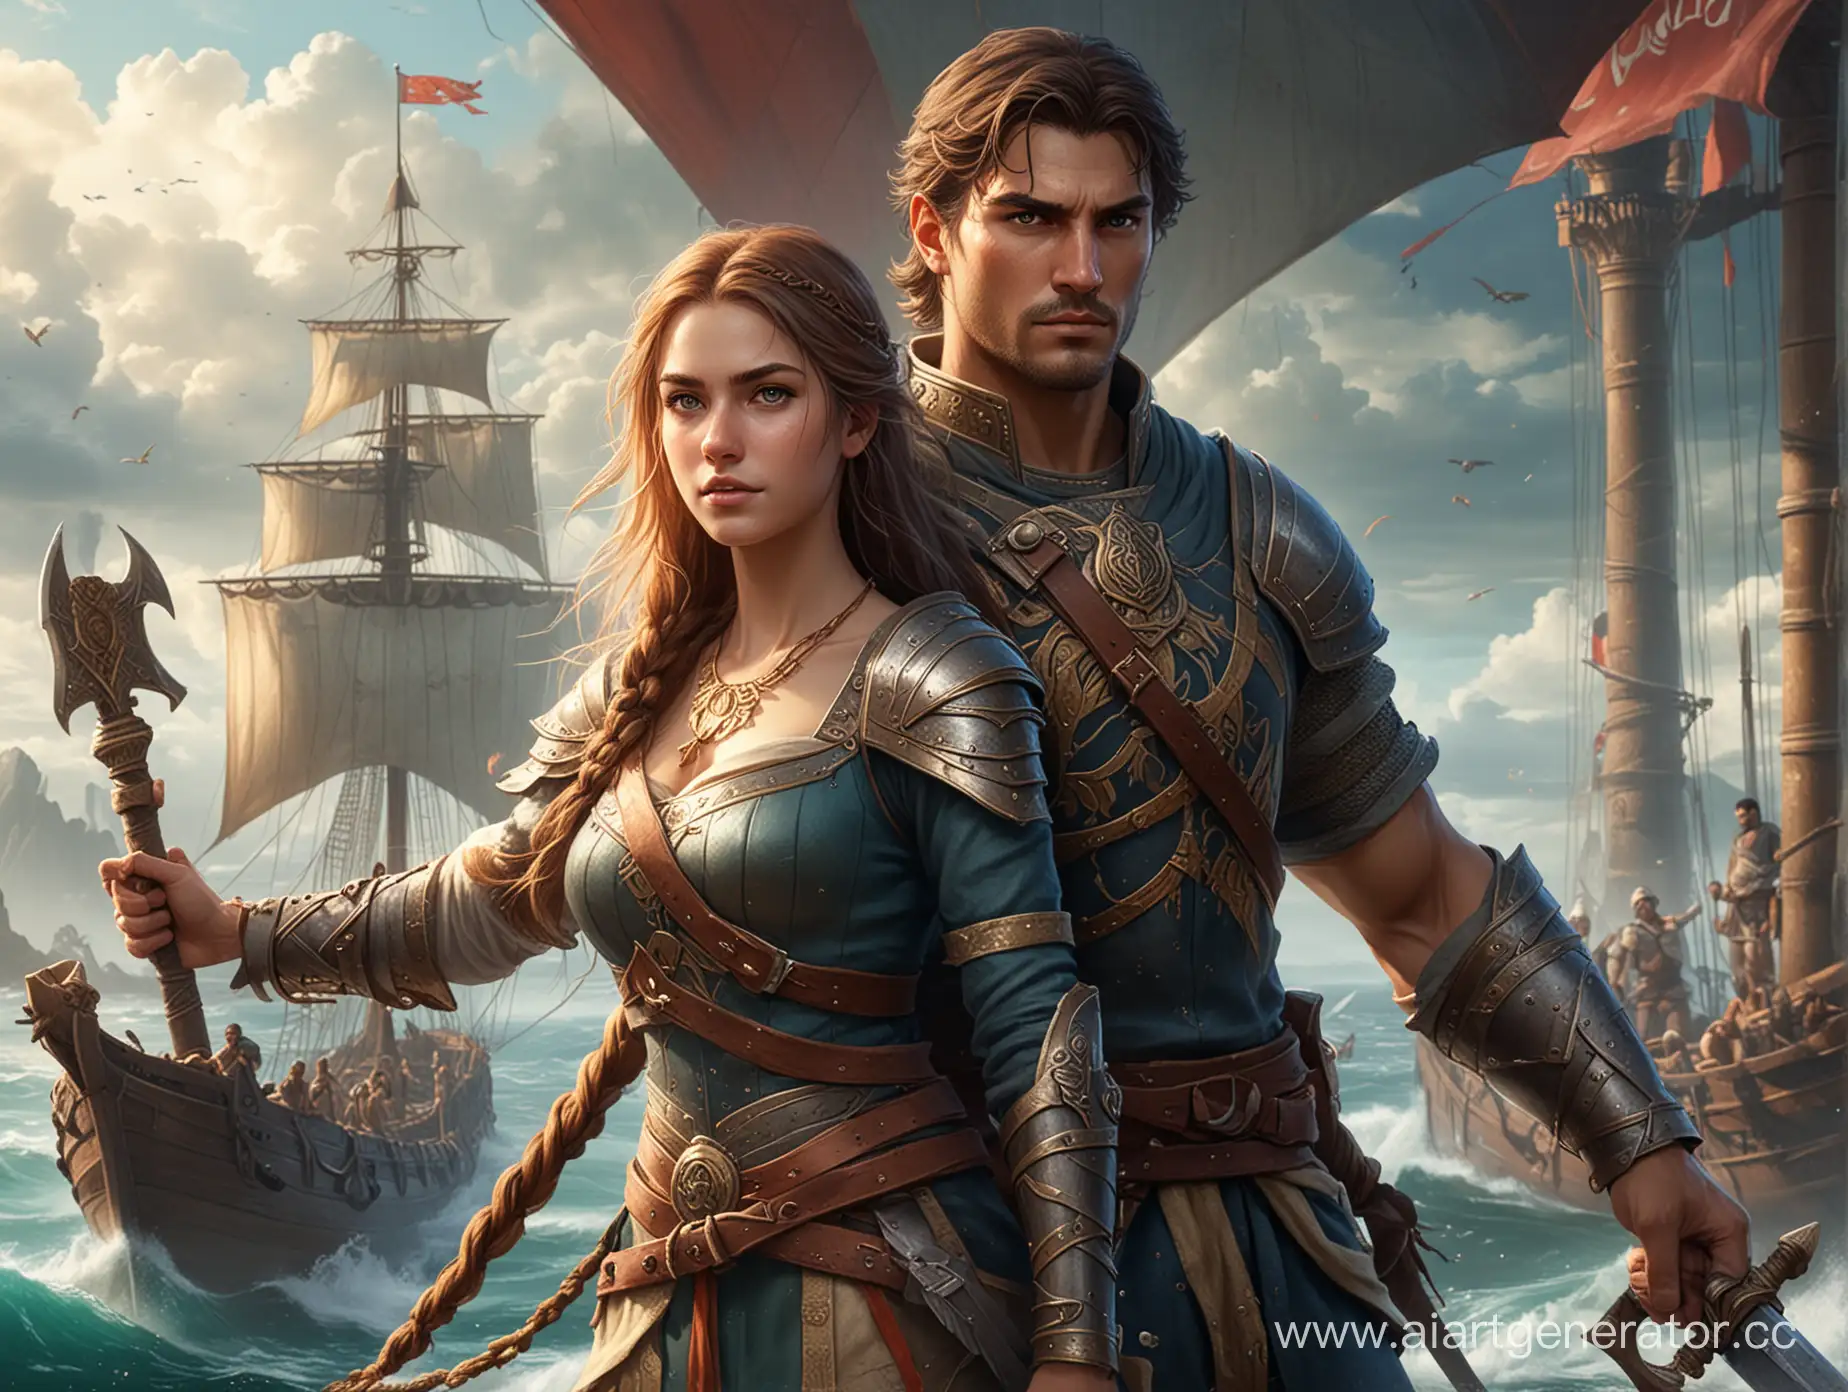 Обложка для эпической игры, древние цивилизации, океаны, корабли, главные персонажи - мужчина воин и девушка в средневековой одежде.